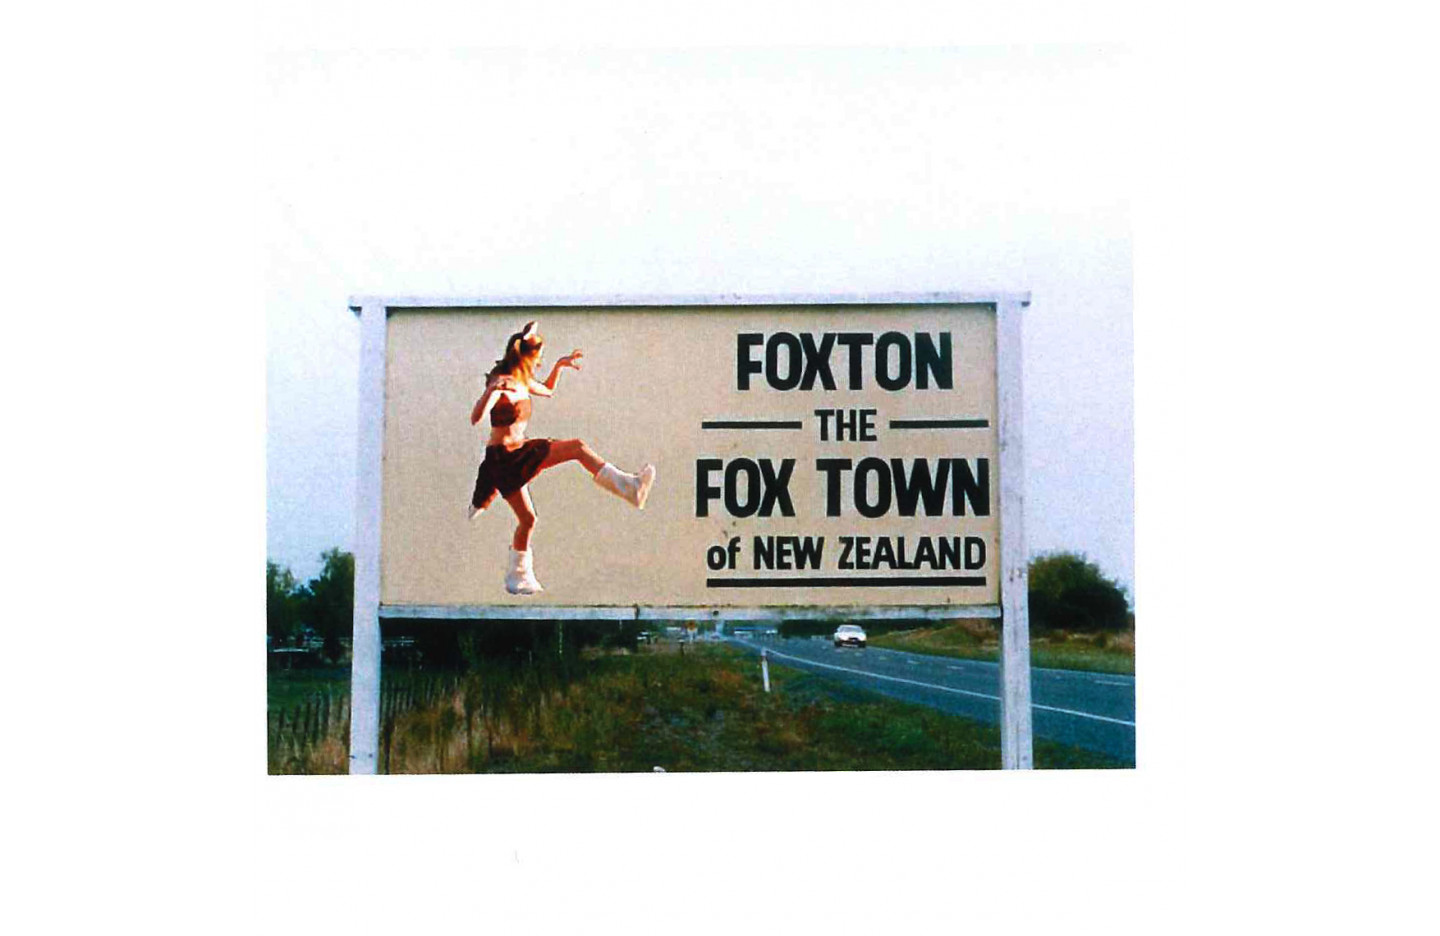 FoxRox: Heroism Begins at Home, Ramp Gallery (2004)